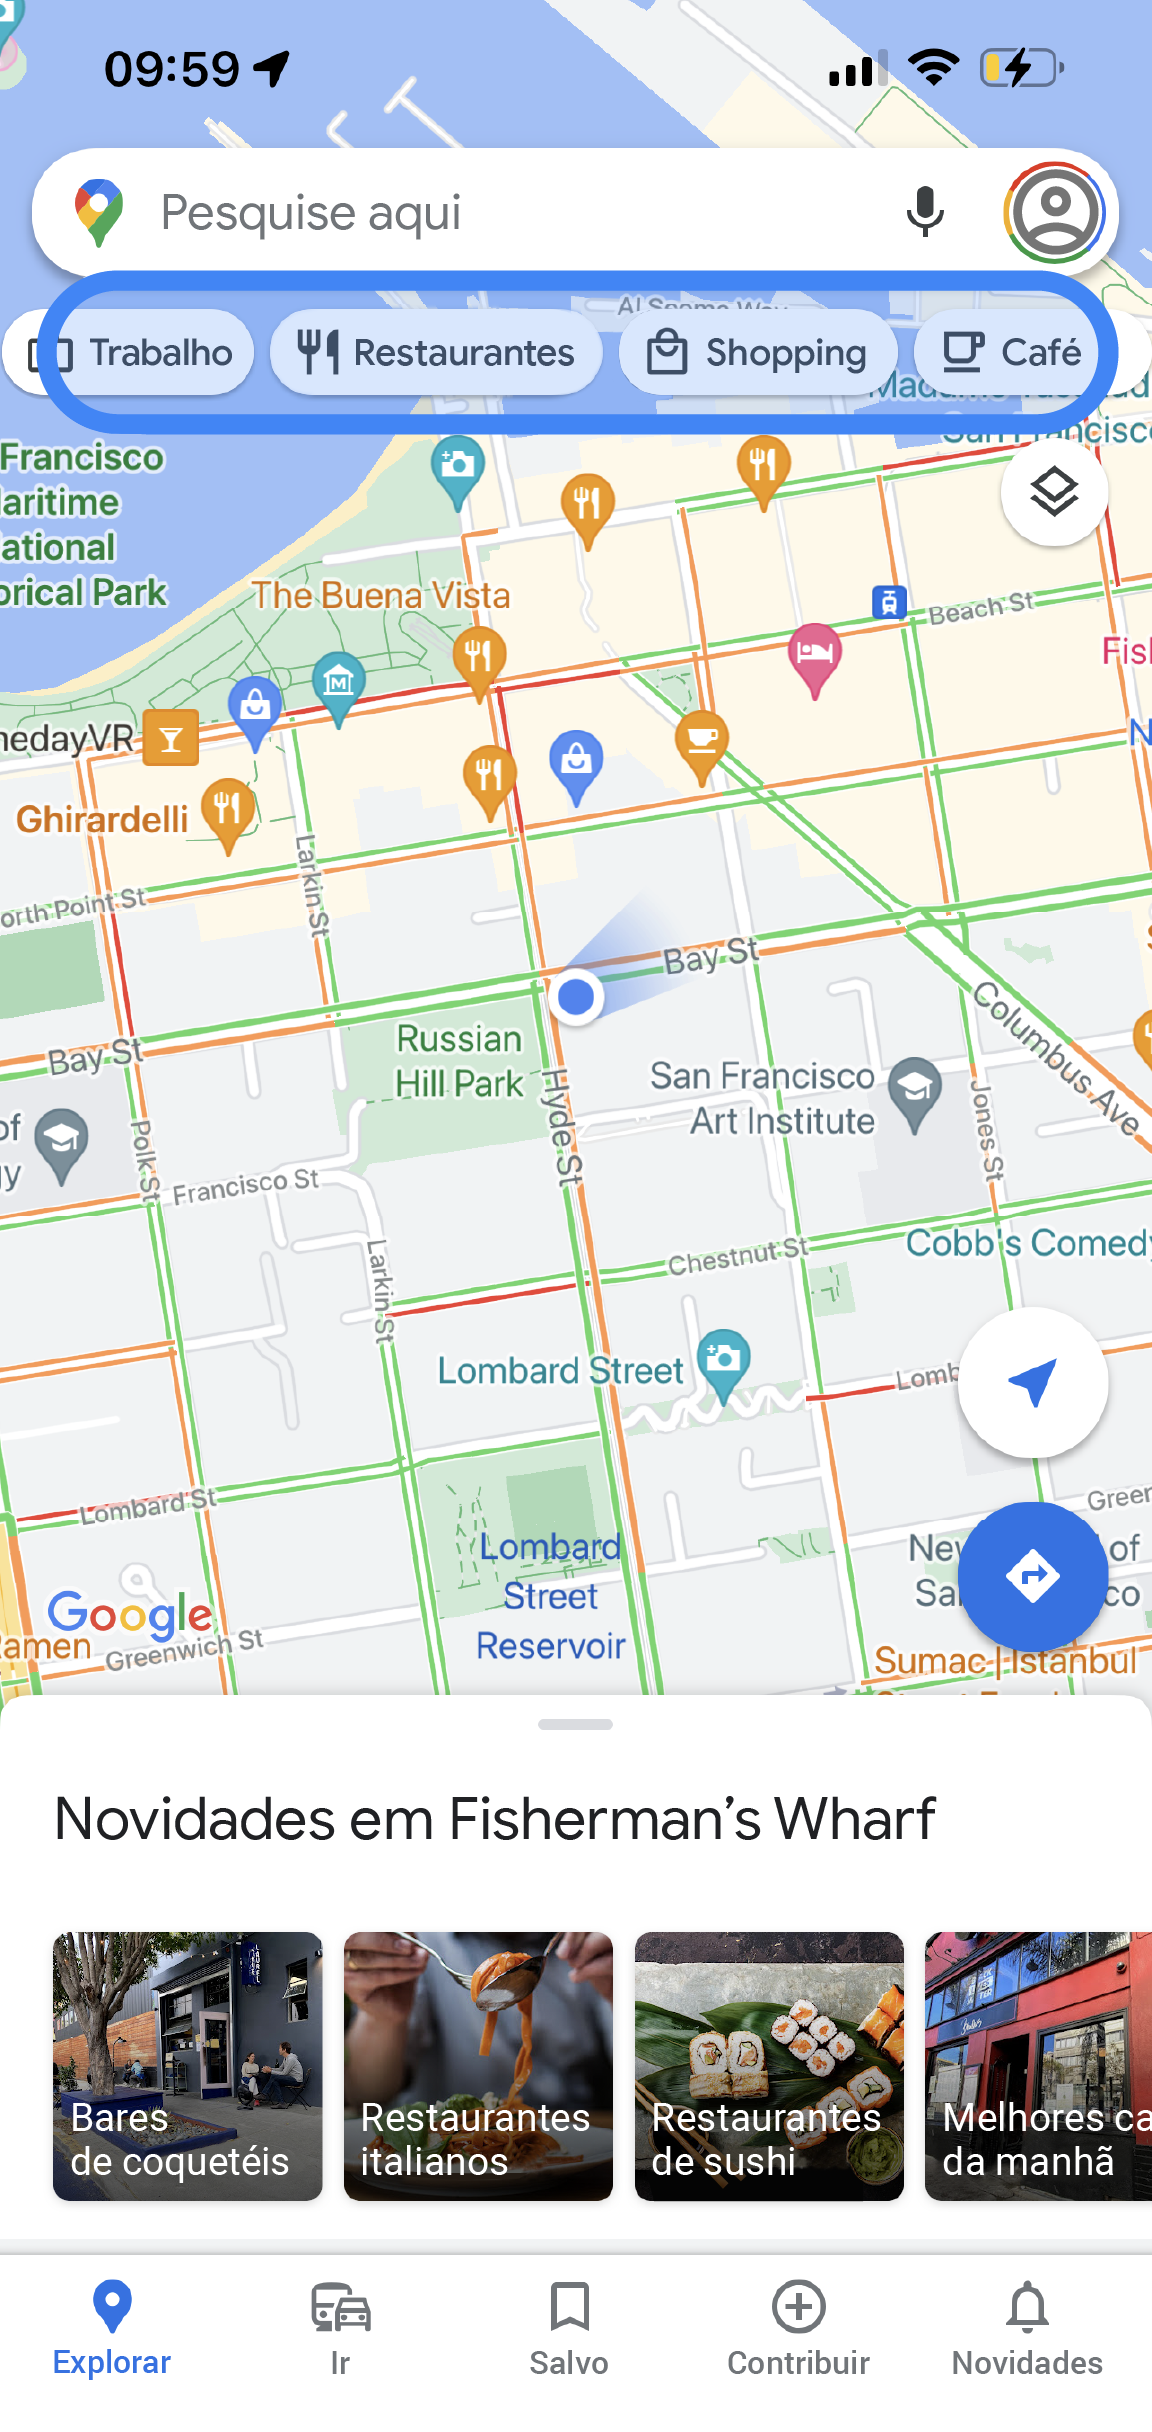 O app Google Maps exibe o mapa de uma área. Abaixo da barra de pesquisa, há guias com as palavras "Trabalho", "Restaurantes", "Café" e "Estacionamento".